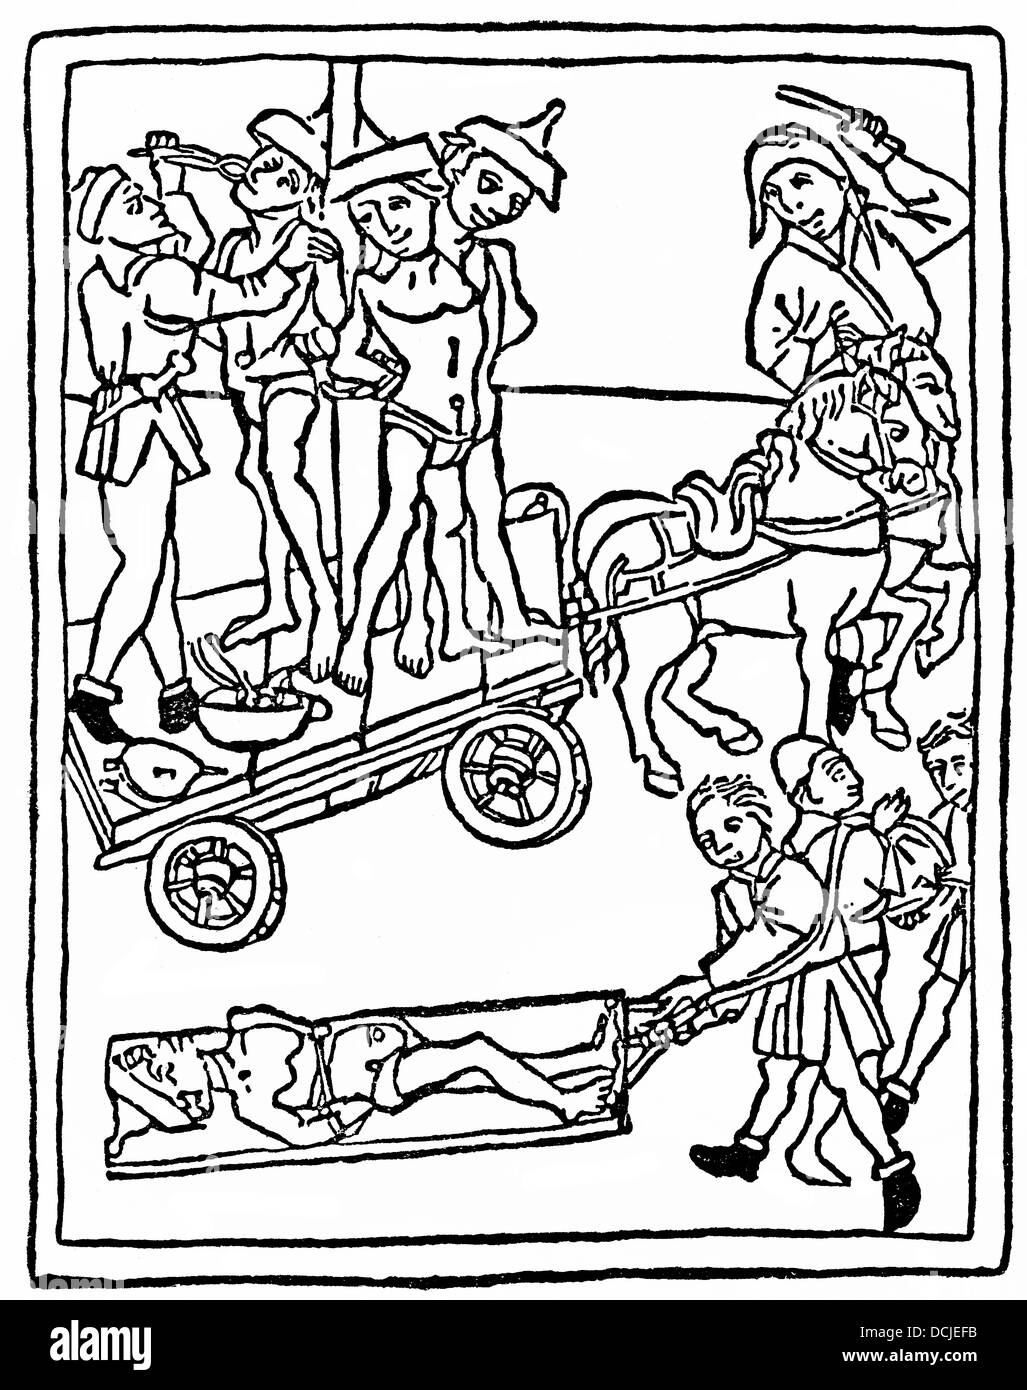 Folter von den Juden, mit jüdischen hüten, 1475, Beispiel der christlichen Antijudaismus im 15. Jahrhundert in Deutschland Stockfoto